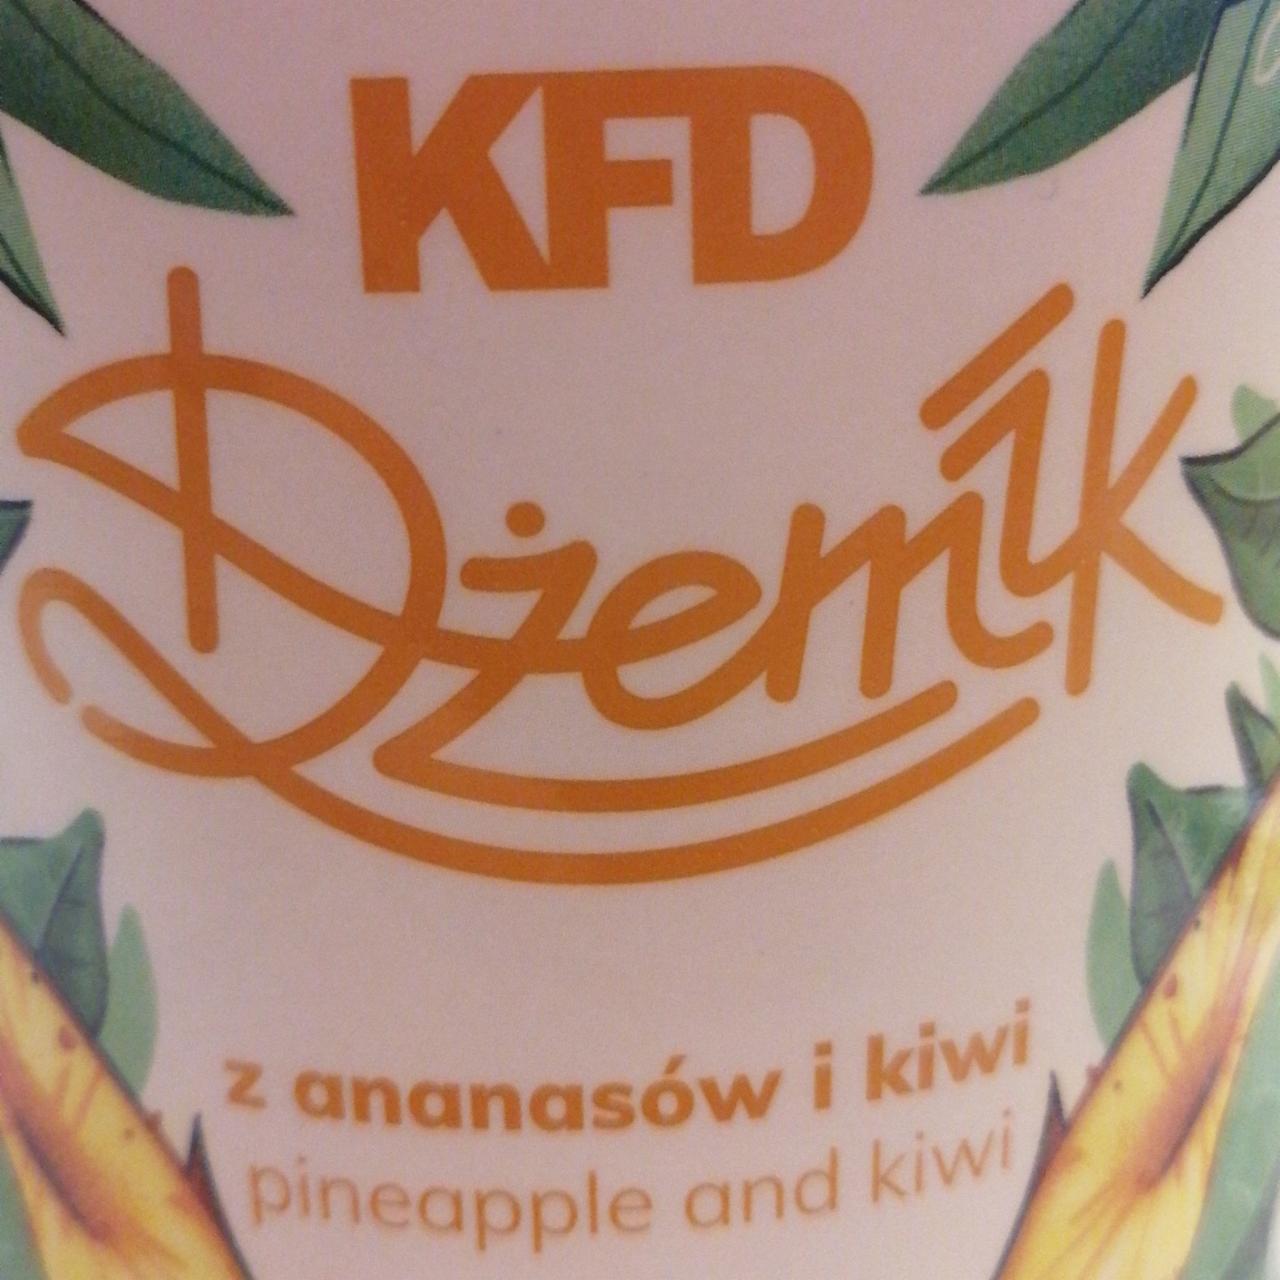 Zdjęcia - Dżemik z ananasów i kiwi KFD